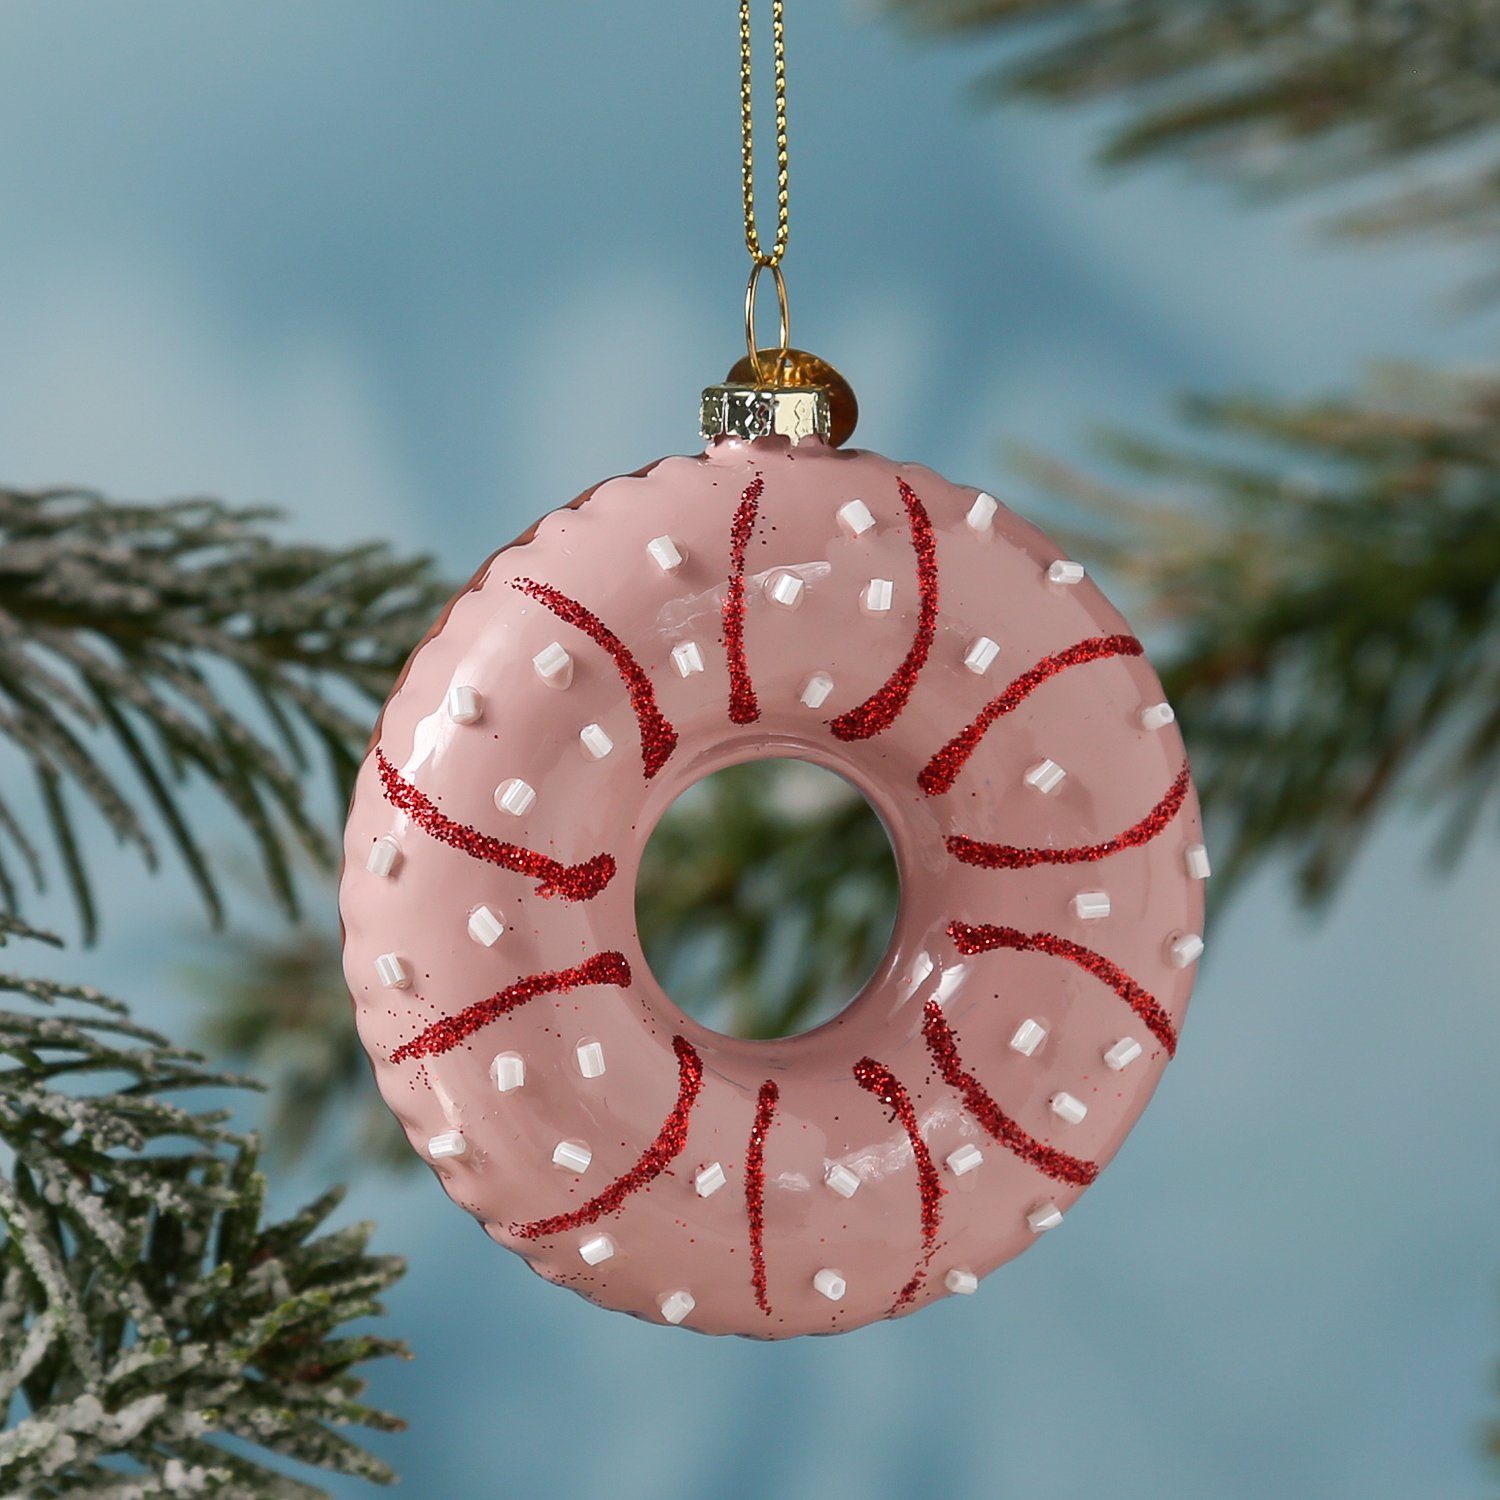 MARELIDA Christbaumschmuck Weihnachtsbaumschmuck Glas Donut mit bunten Streuseln H: 8,5cm rosa